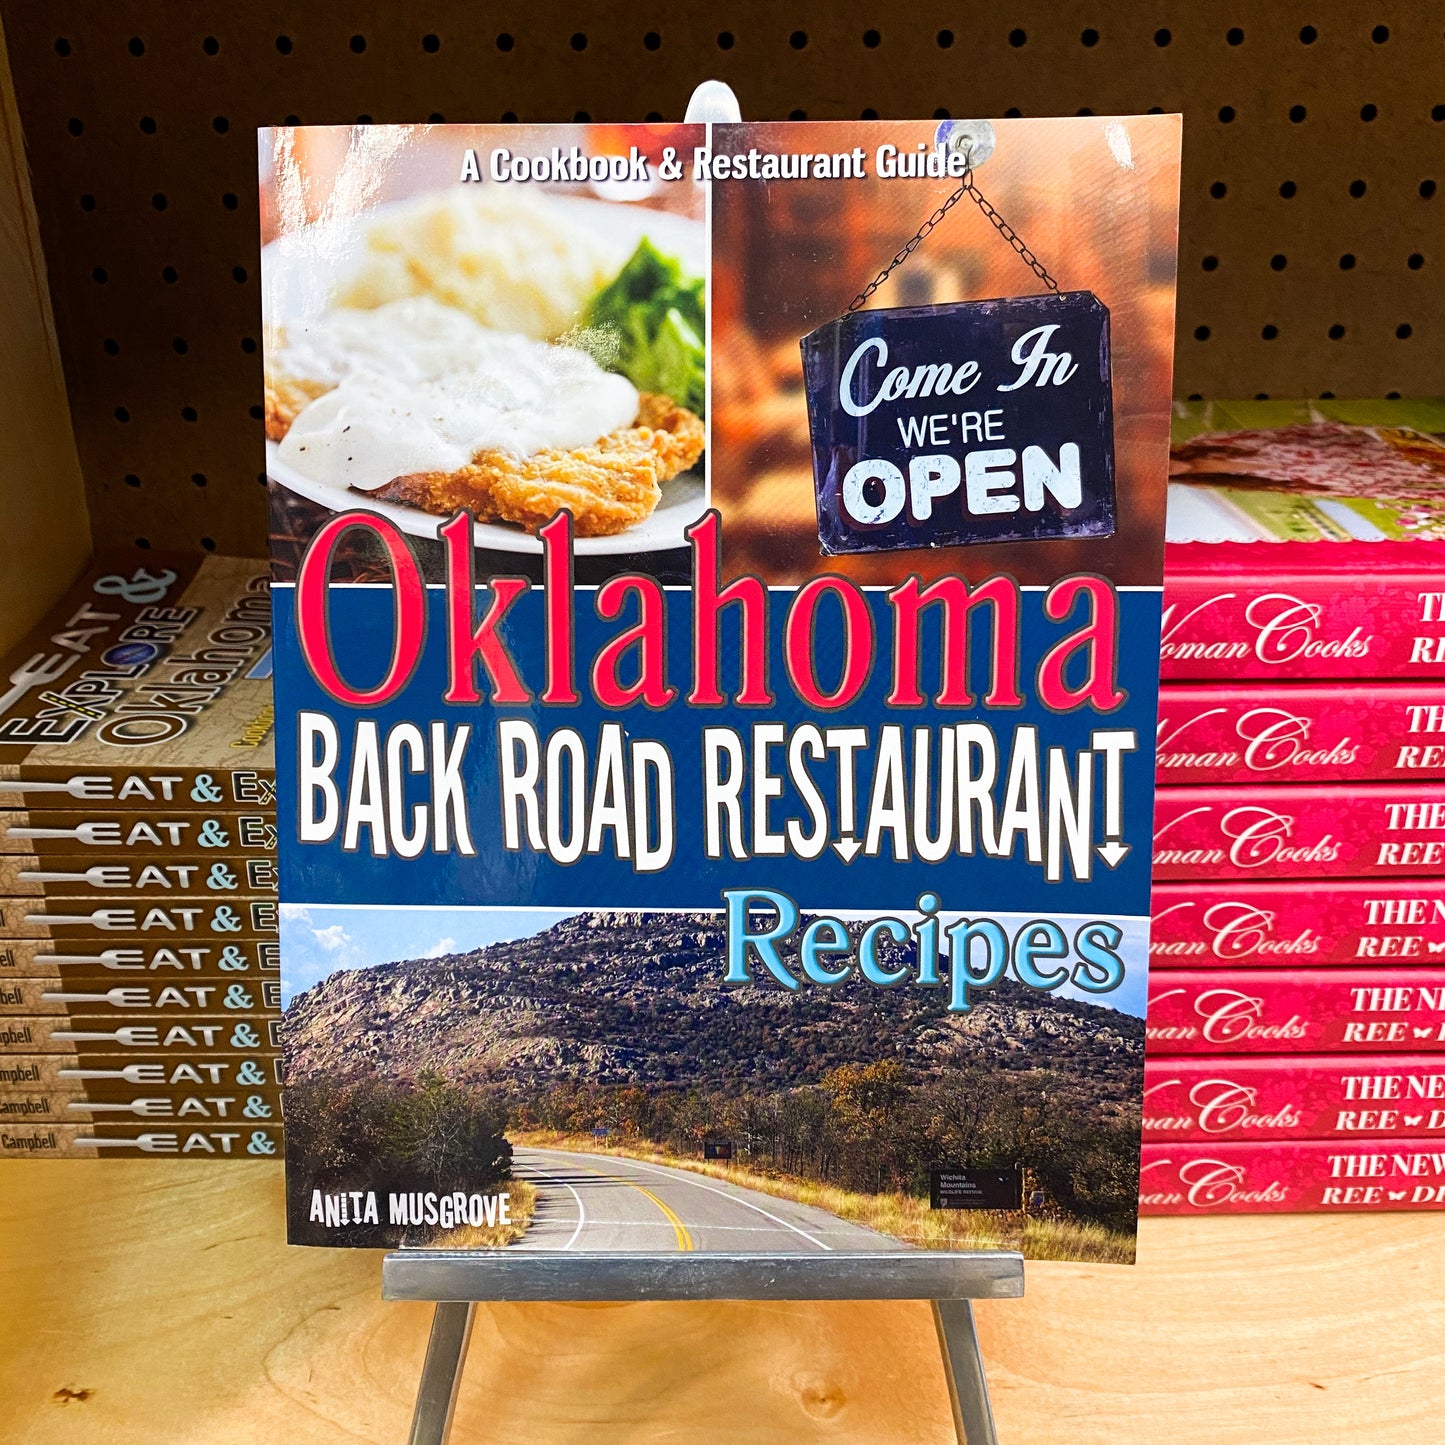 Oklahoma Back Road Restaurant Recipes